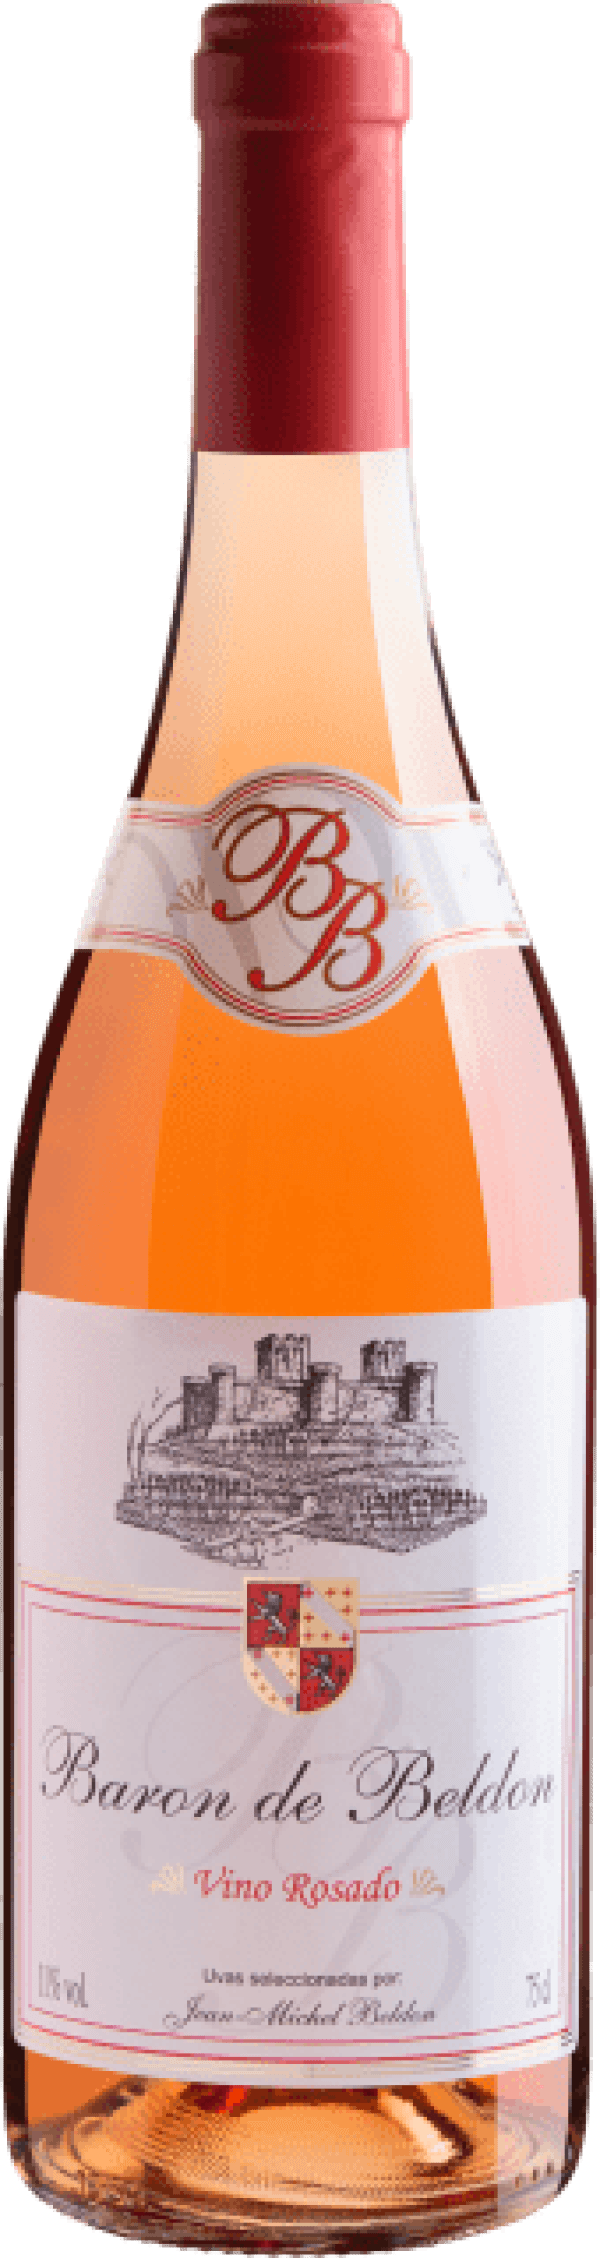 Baron de Beldon Vino Rosado 2020